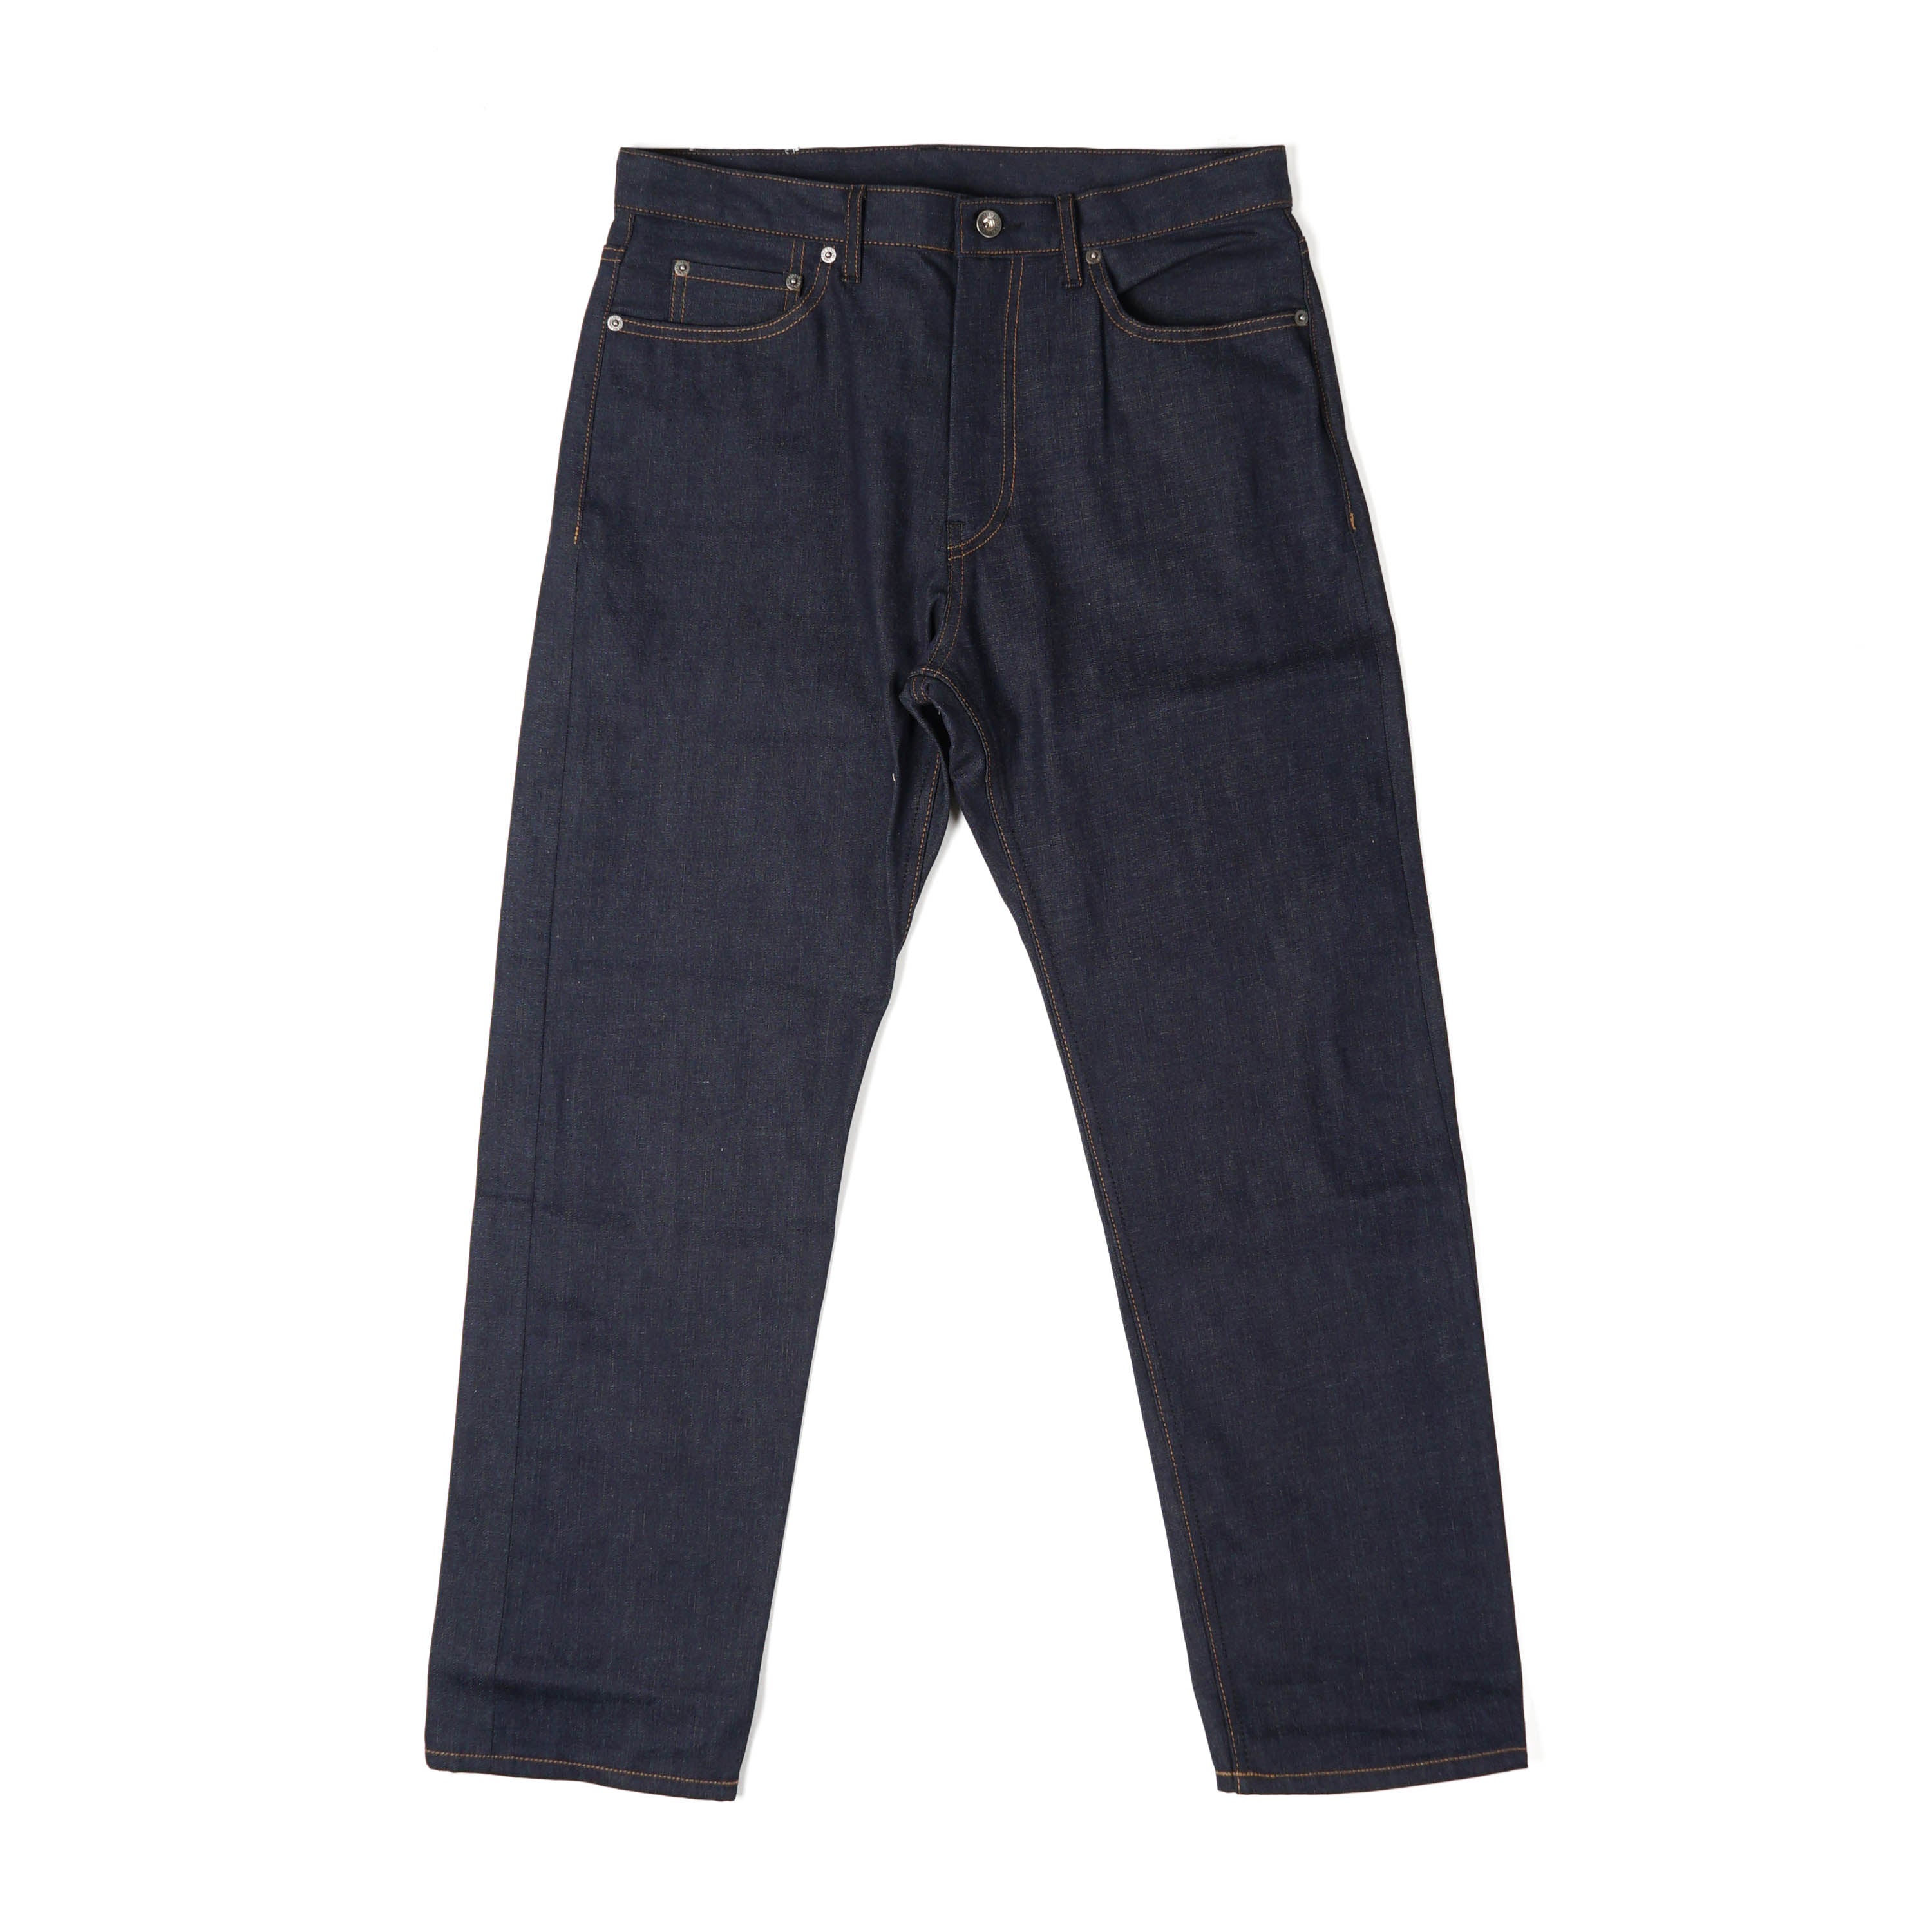 Type 5 Jeans - Indigo 10oz Cone Denim